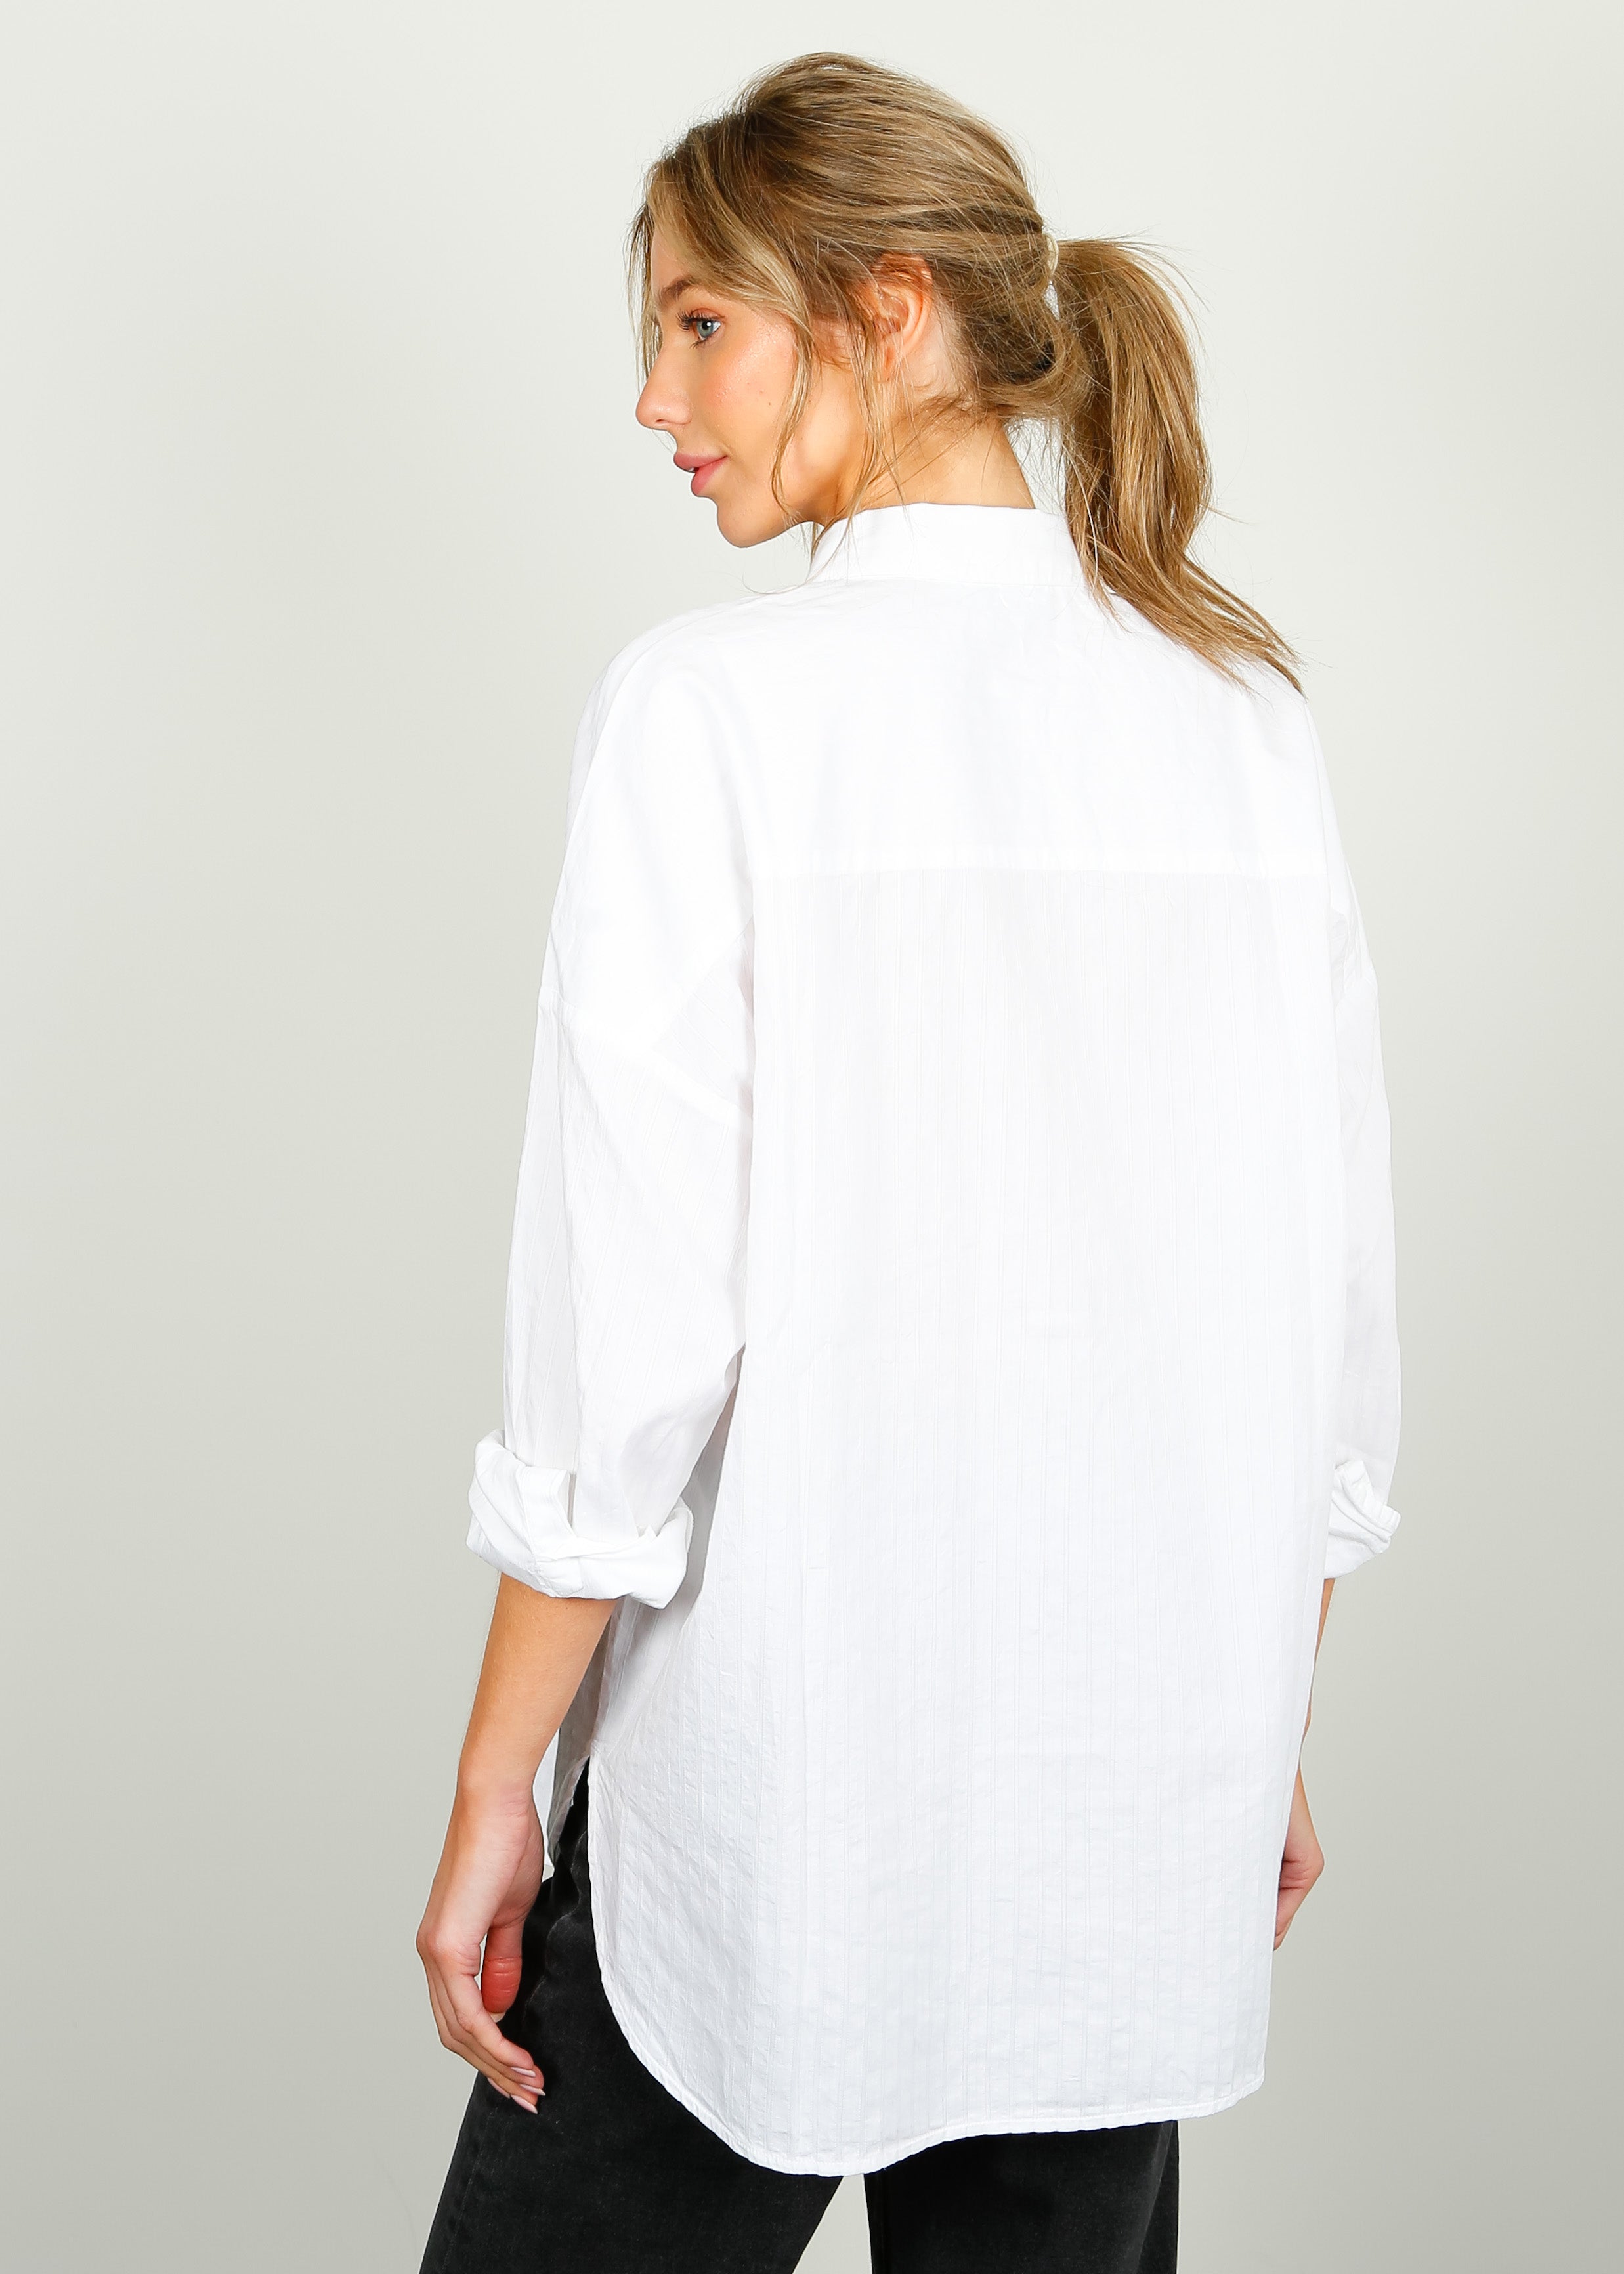 SLF Emma Sanni Stripe Shirt in White